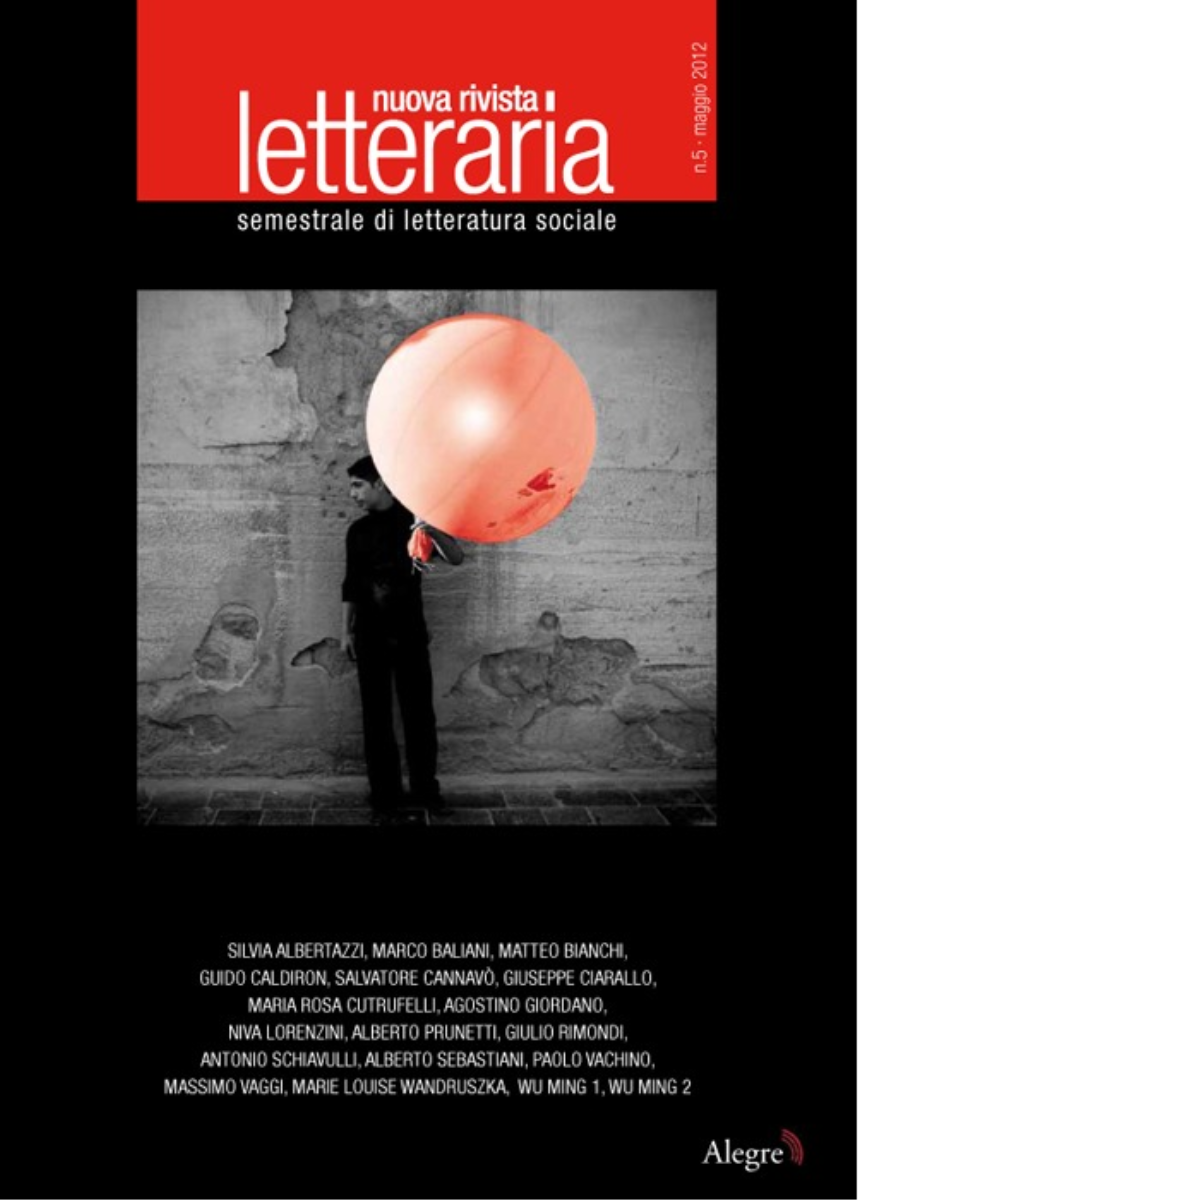 NUOVA RIVISTA LETTERARIA (2012). VOL. 5 di AA.VV. - edizioni alegre, 2012